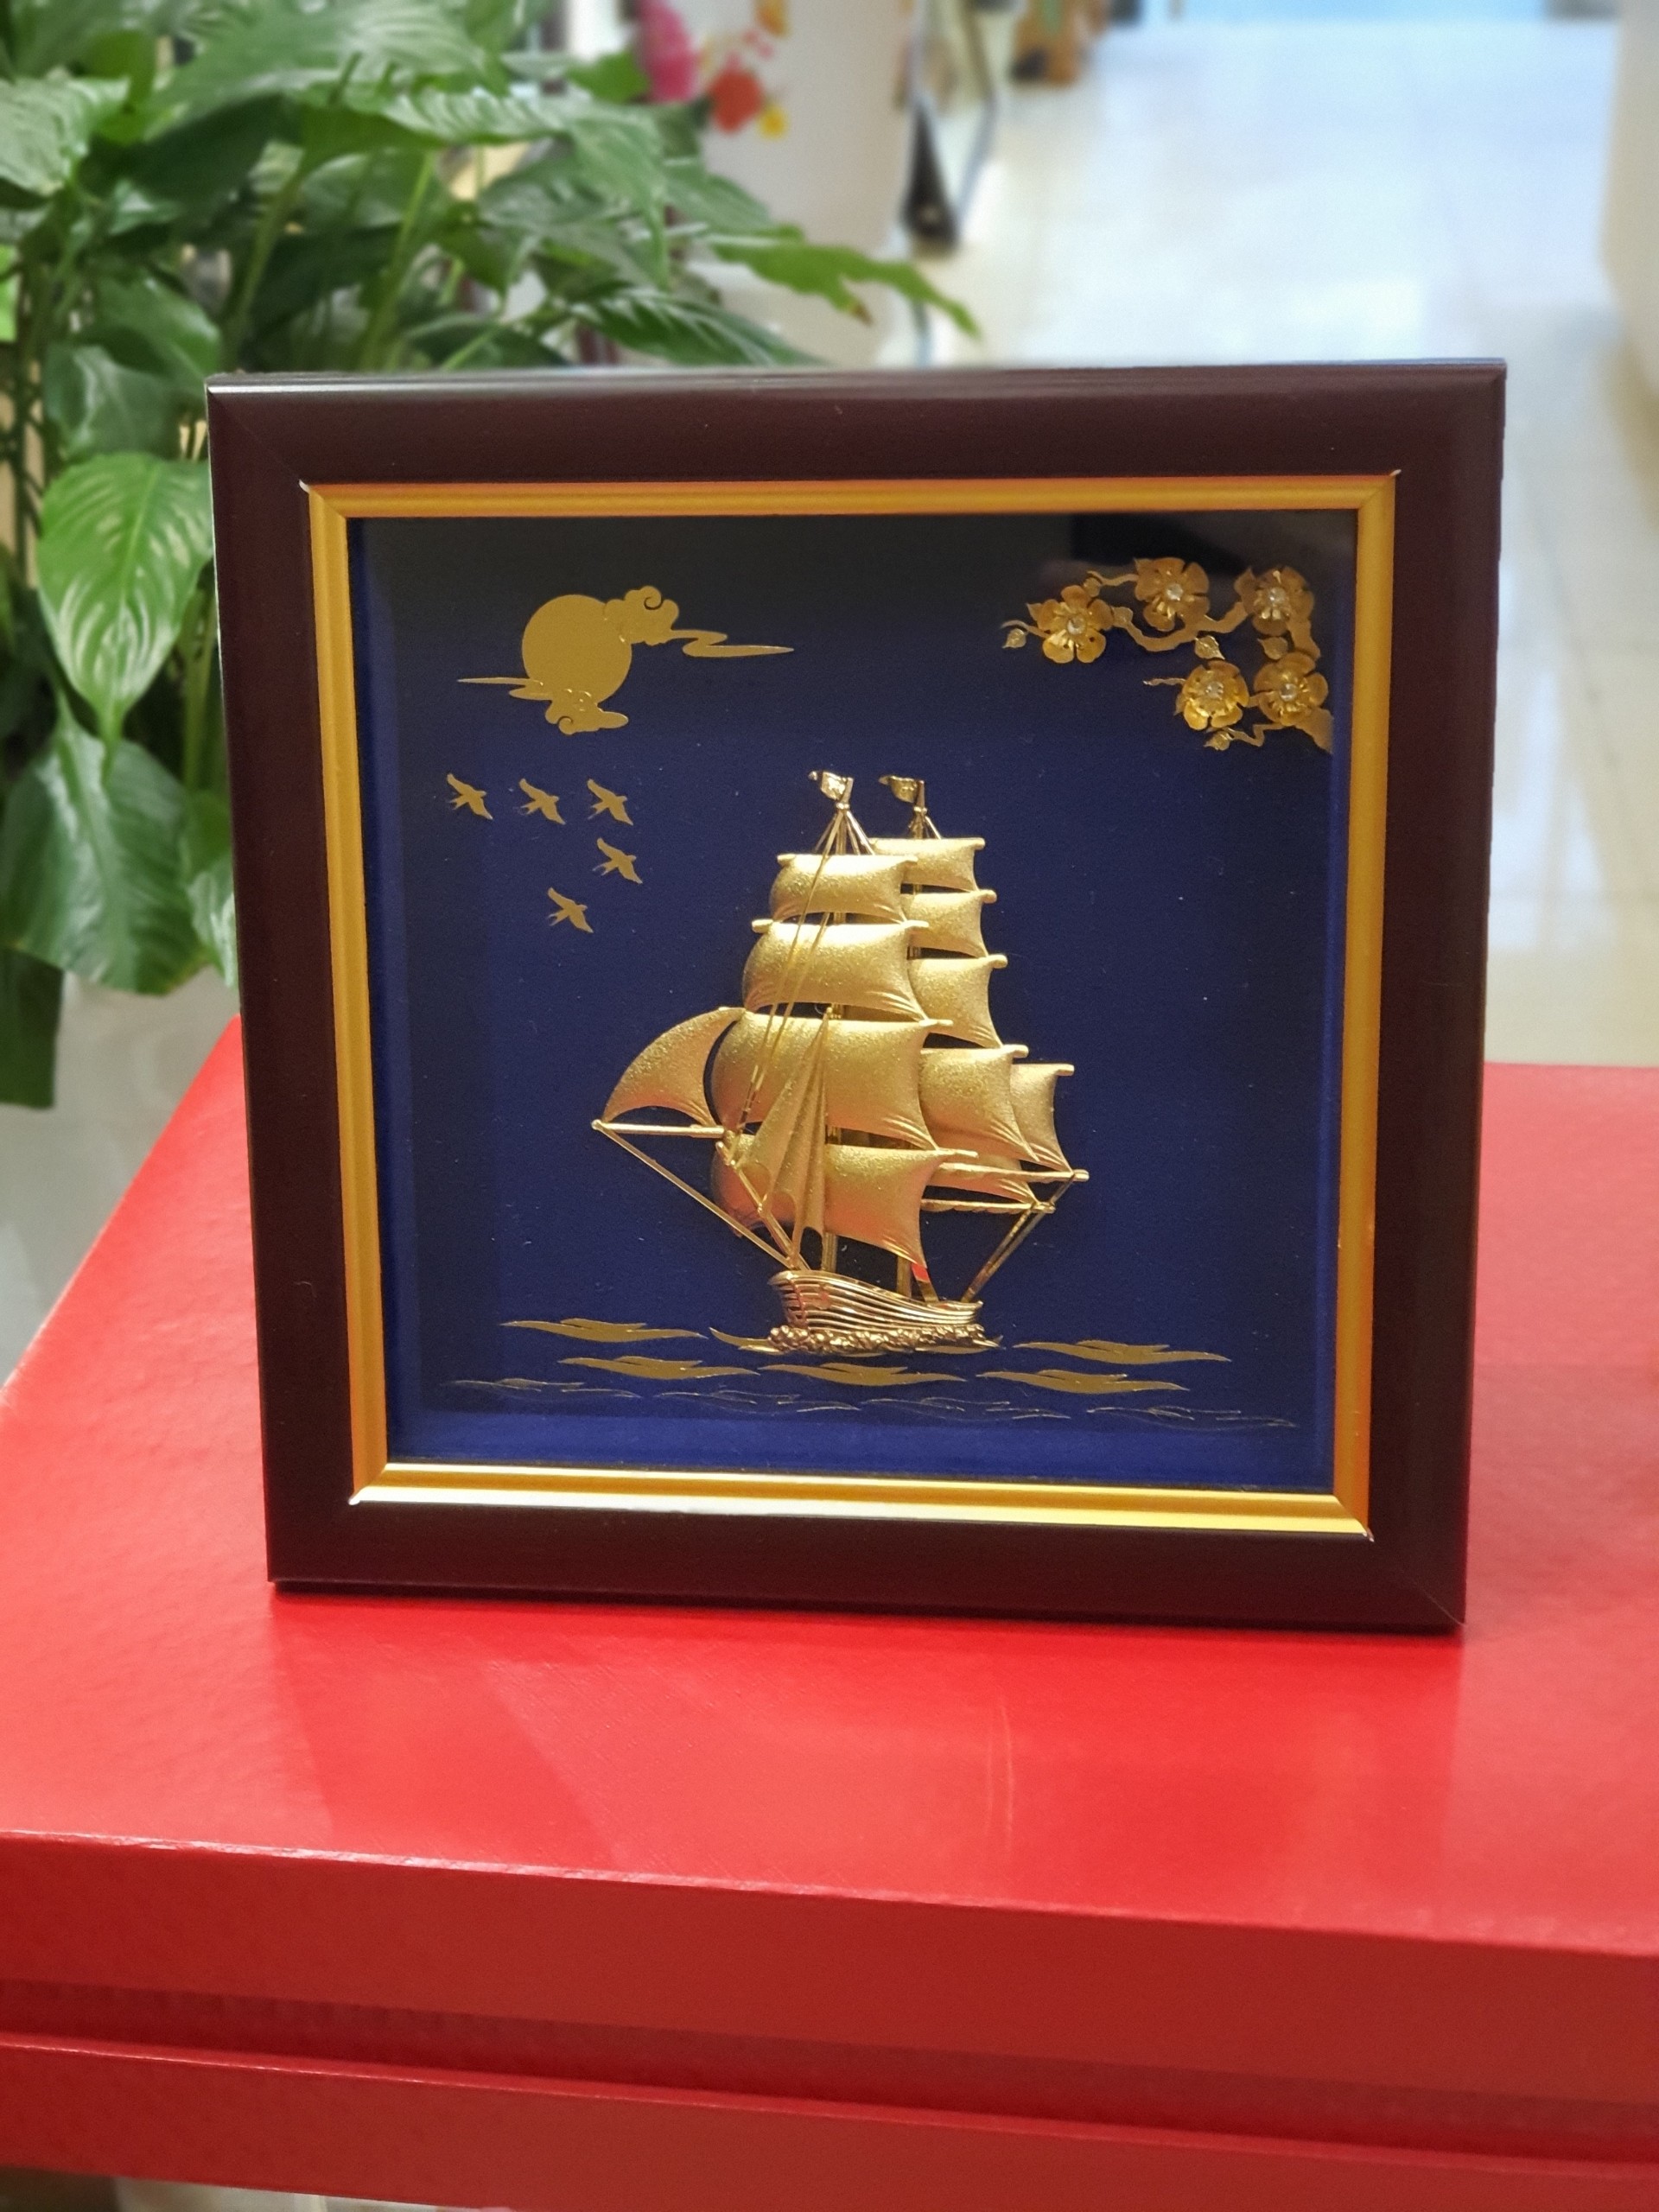 Tranh thuyền thuận buồm xuôi gió (20x20cm) MT Gold Art- Hàng chính hãng, trang trí nhà cửa, quà tặng sếp, đối tác, khách hàng.